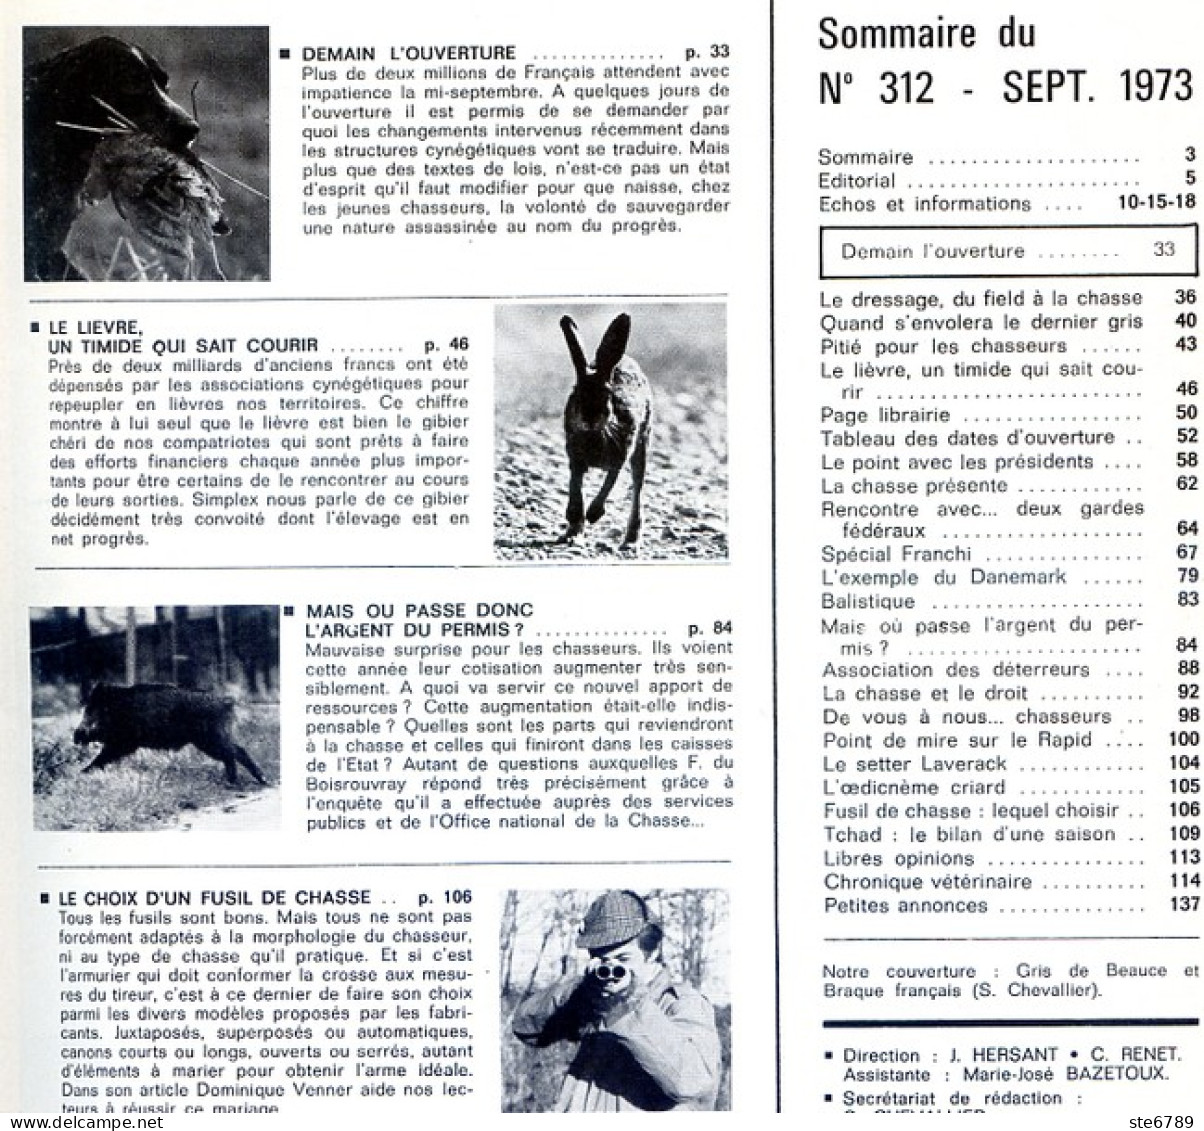 La Revue Nationale De LA CHASSE N° 312 Septembre 1973 Le Lievre , Choix Fusil De Chasse - Fischen + Jagen